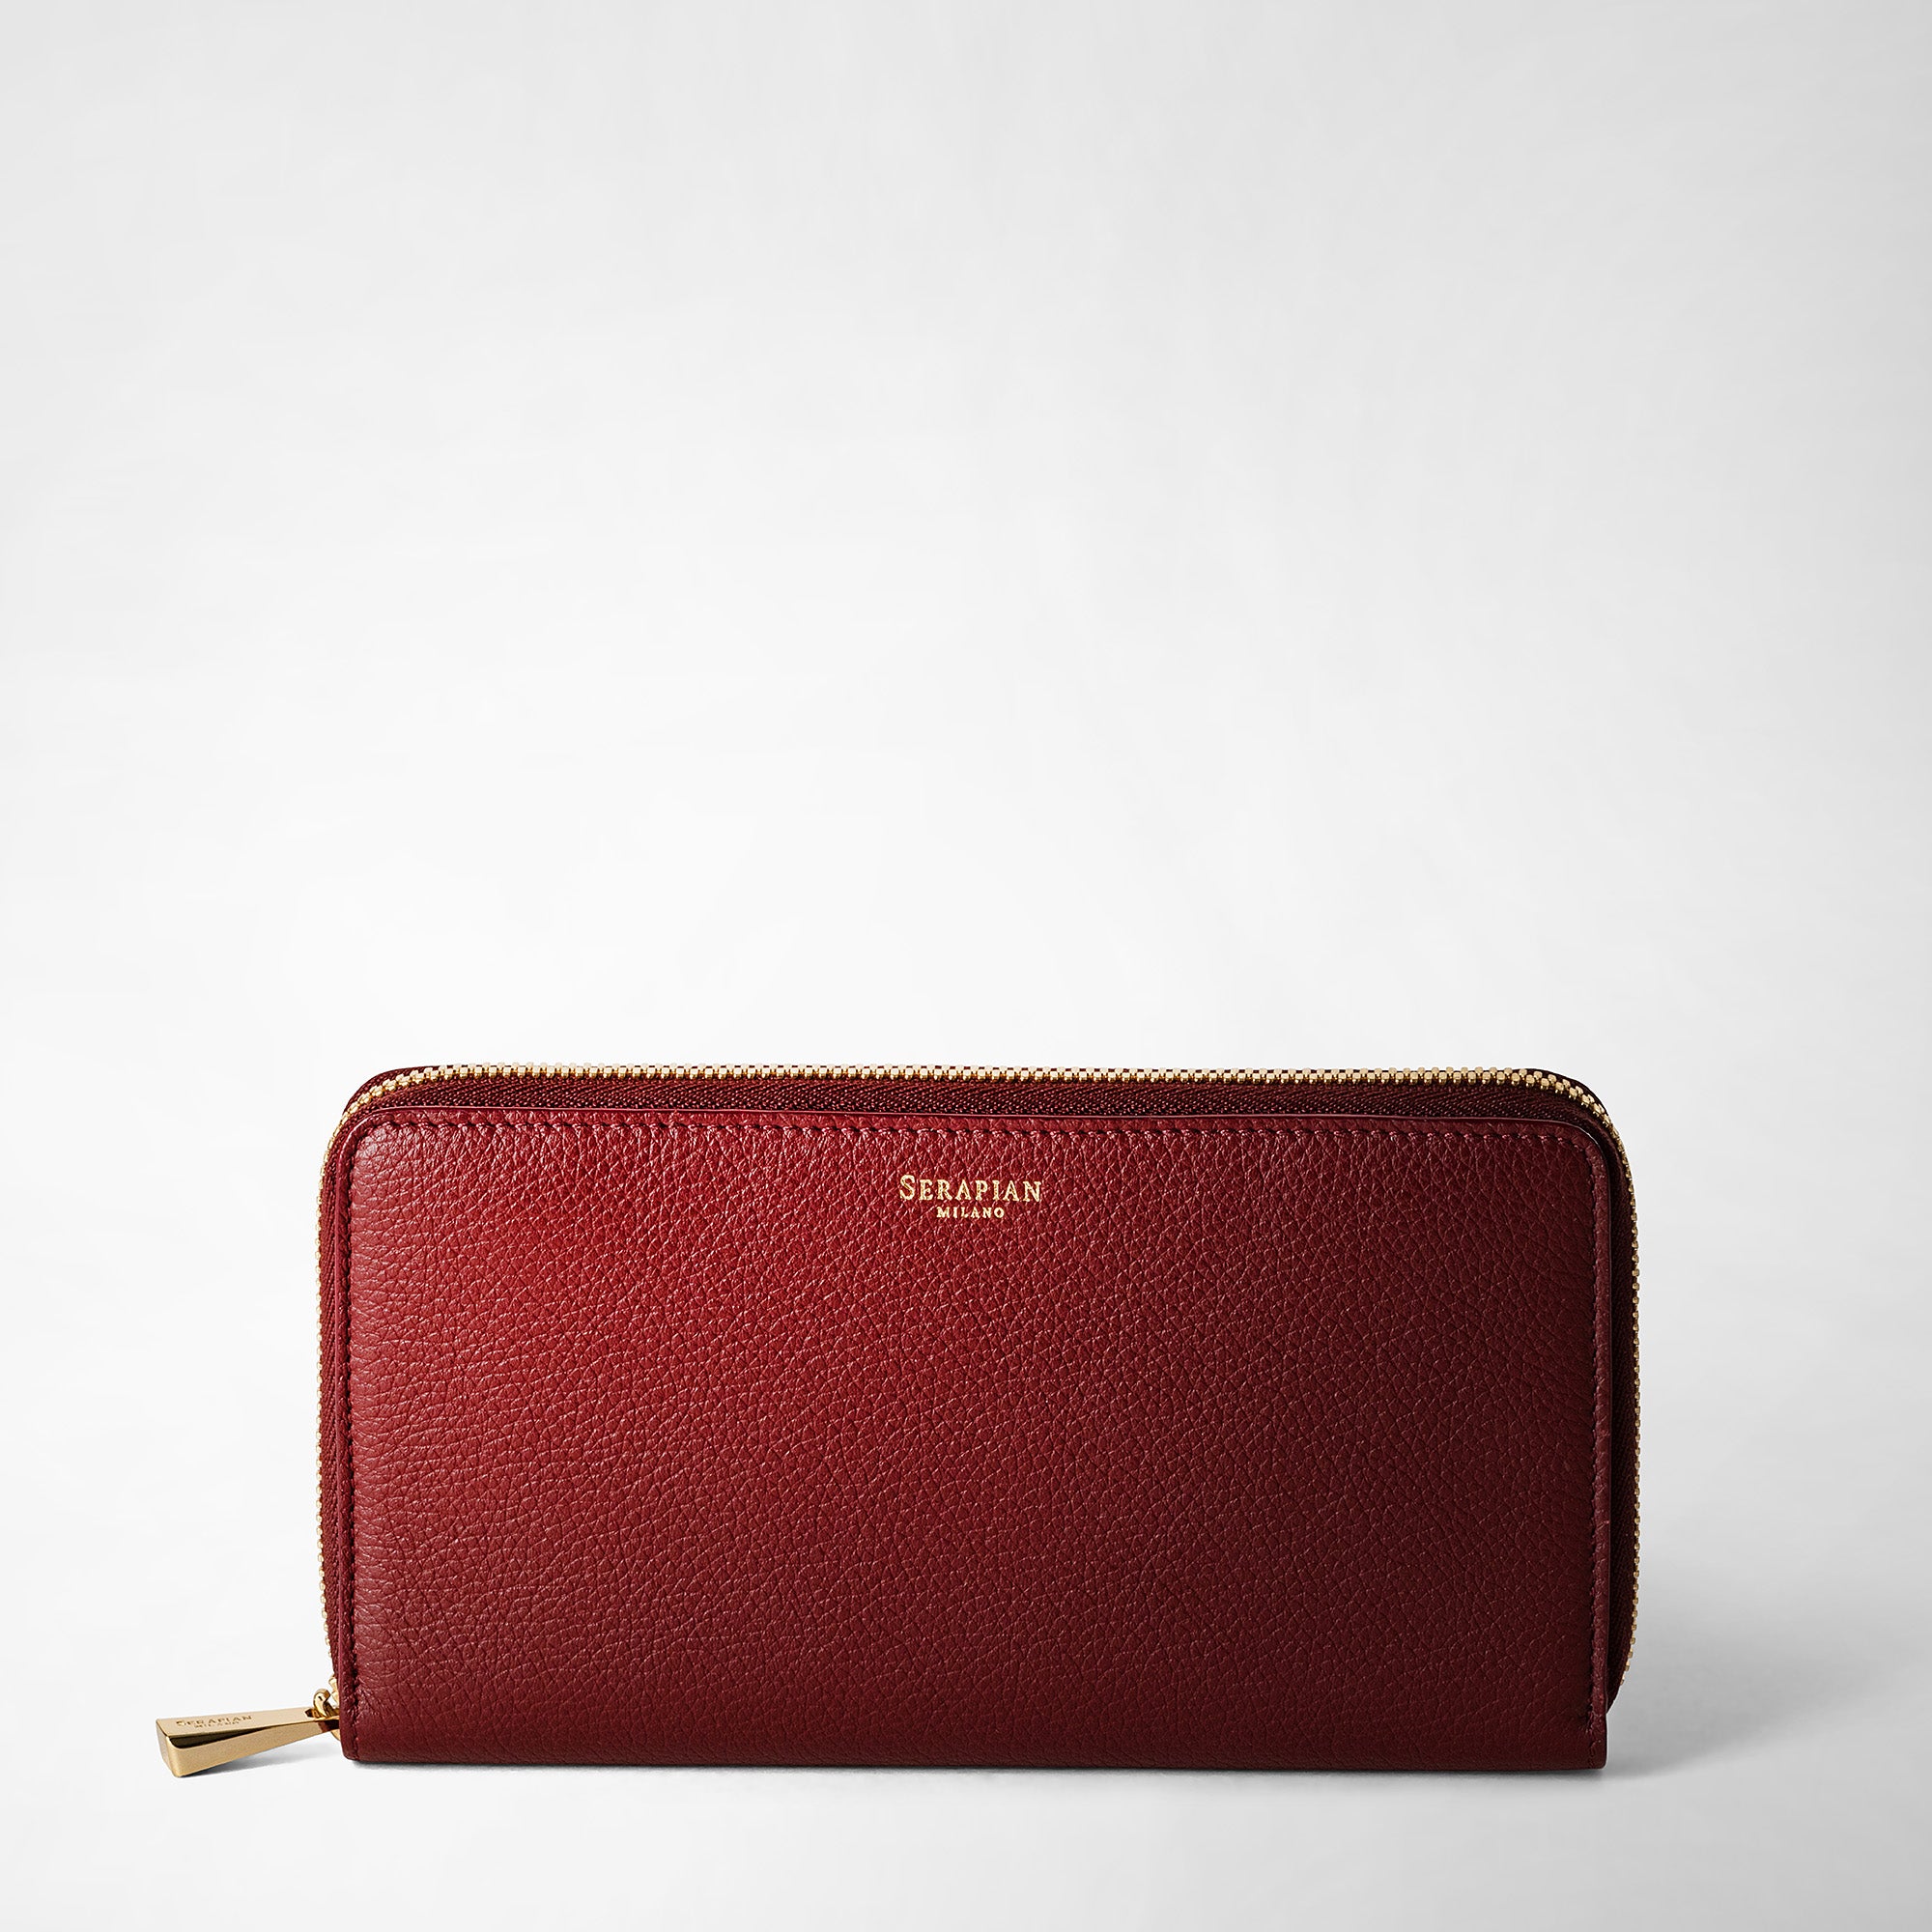 Zip-around wallet in rugiada leather burgundy – Serapian Boutique Online